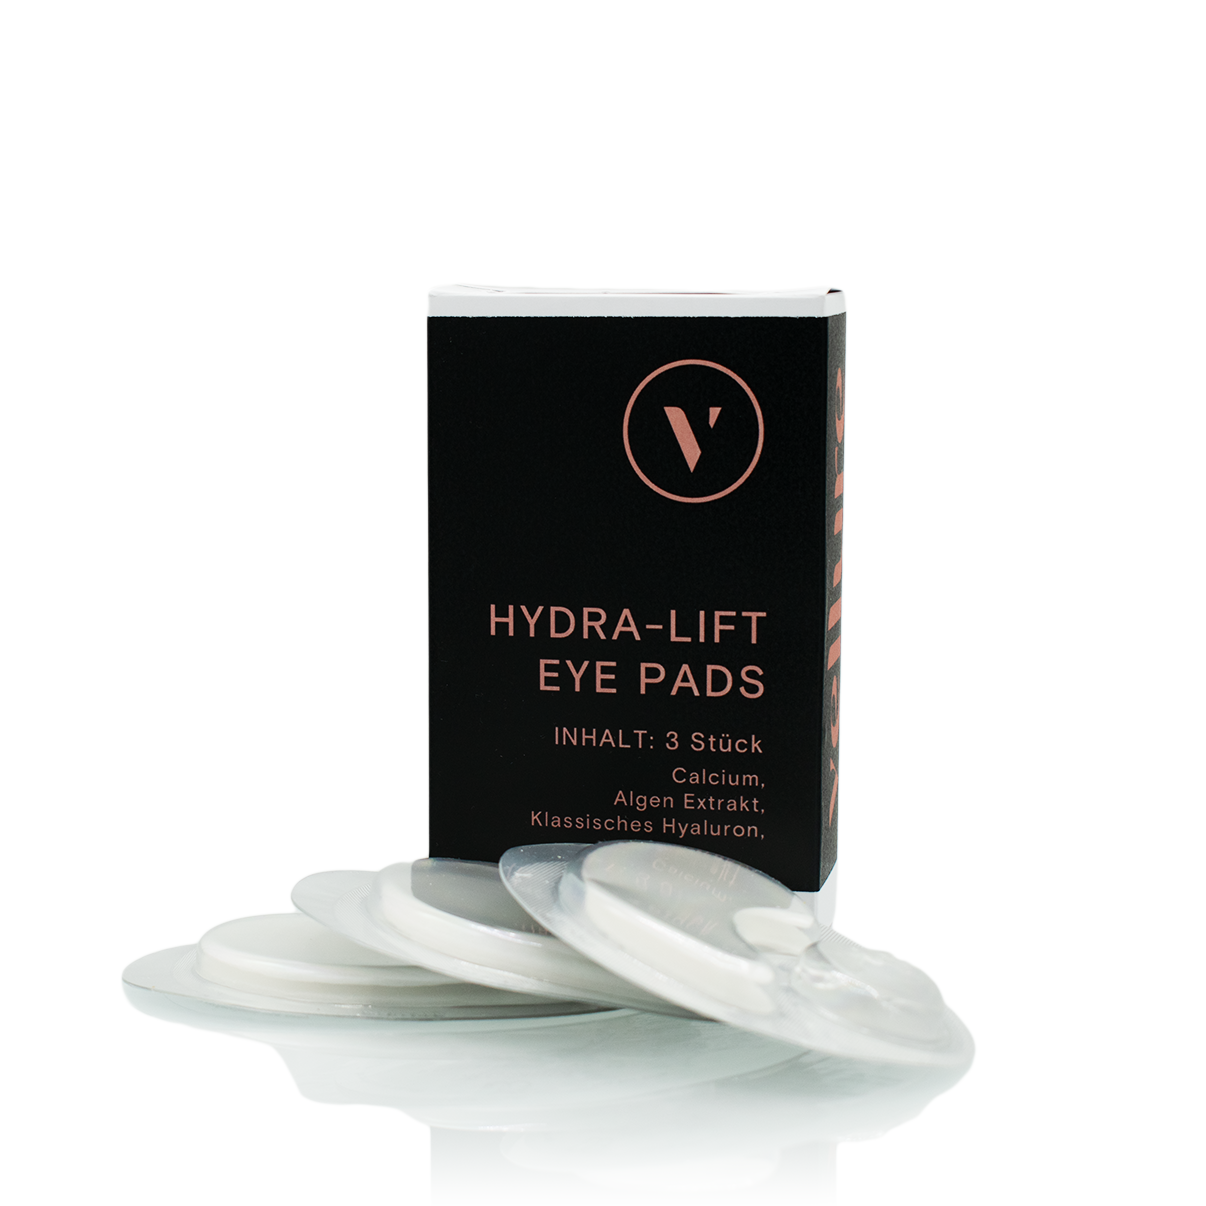 Abbildung der Hydra Lift Eyepads in einer Kartonverpackung und im Vordergrund 3 Eye Pads zur Ansicht.